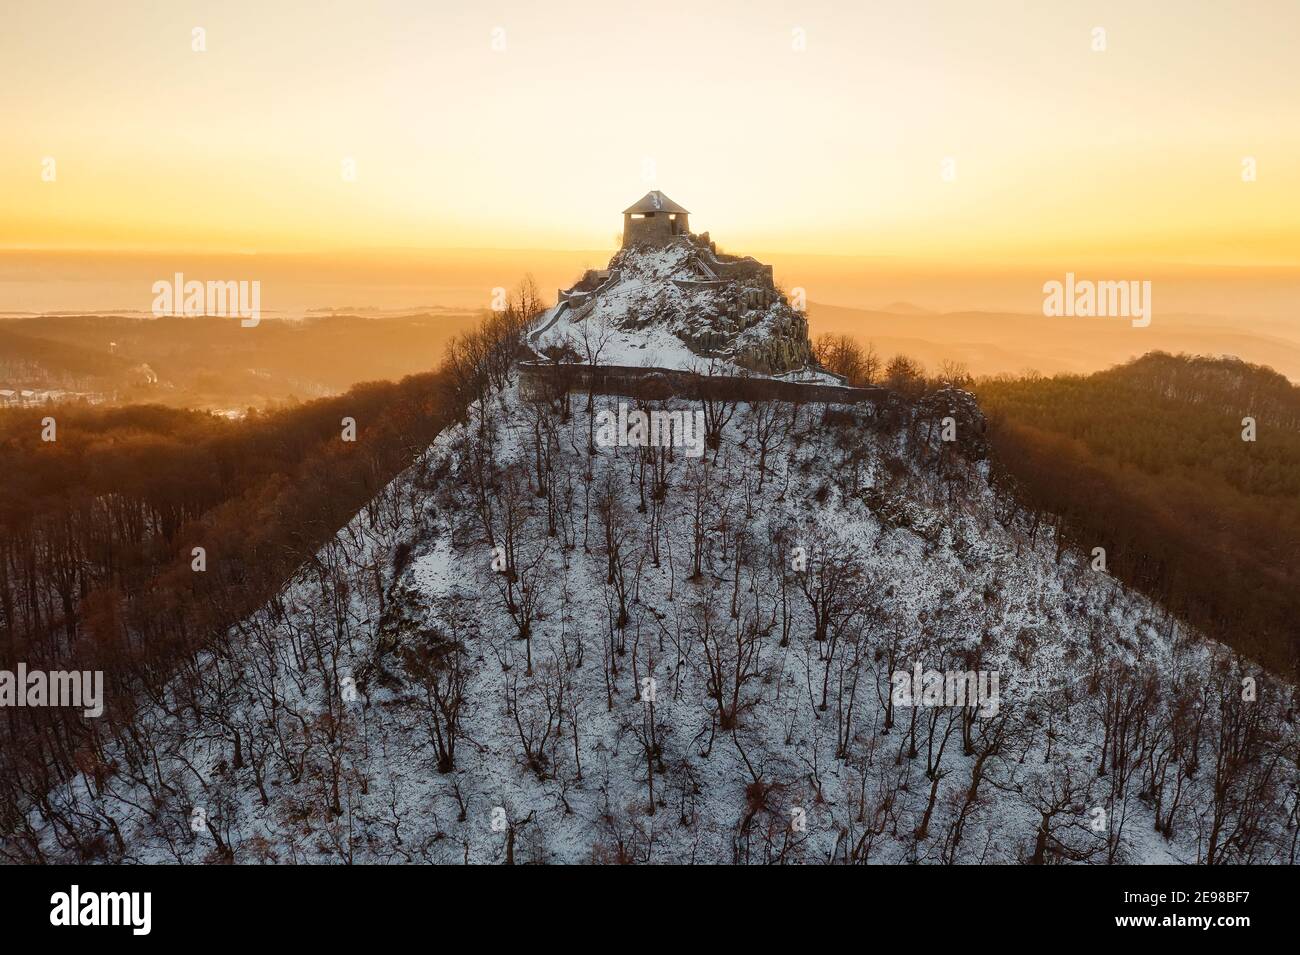 Rovine del castello di Salgo in Ungheria. Rovine medievali del forte vicino alla città di Salgobanya. Costruito nel 13 ° secolo. Incredibile vista aerea in inverno con neve coperta Foto Stock